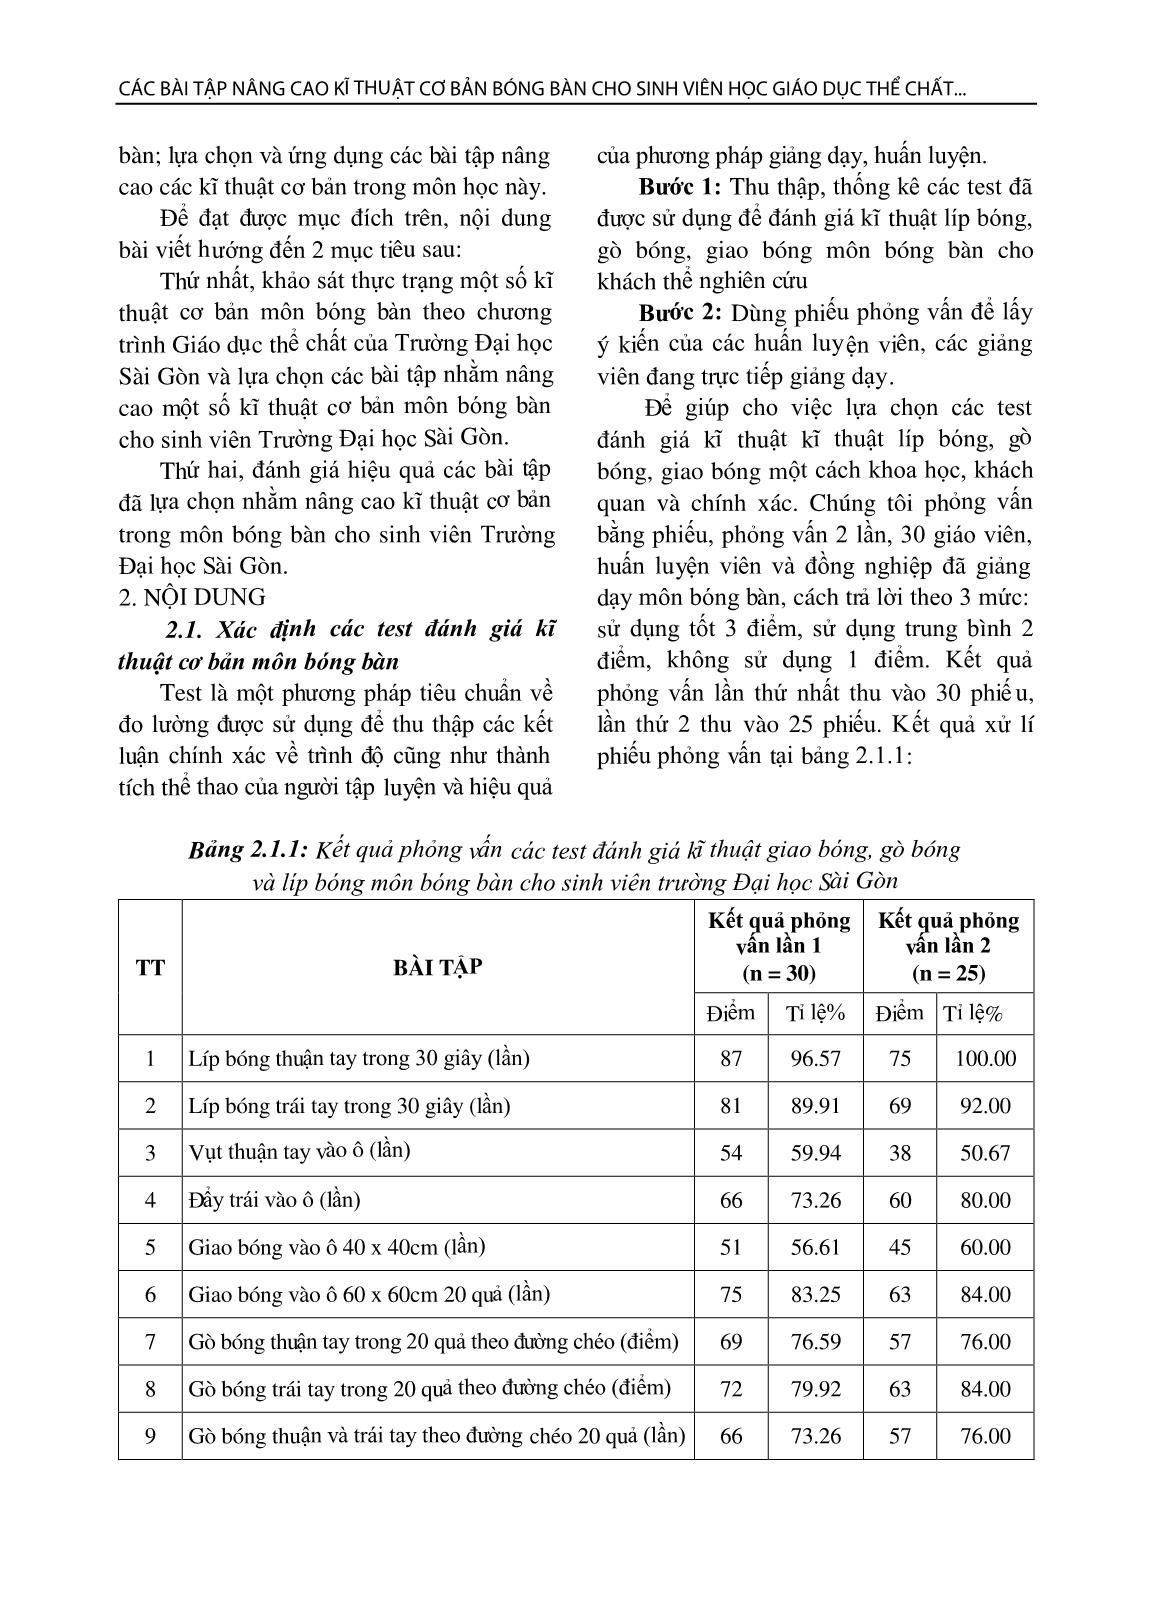 Các bài tập nâng cao kĩ thuật cơ bản bóng bàn cho sinh viên học giáo dục thể chất ở trường đại học Sài Gòn trang 2